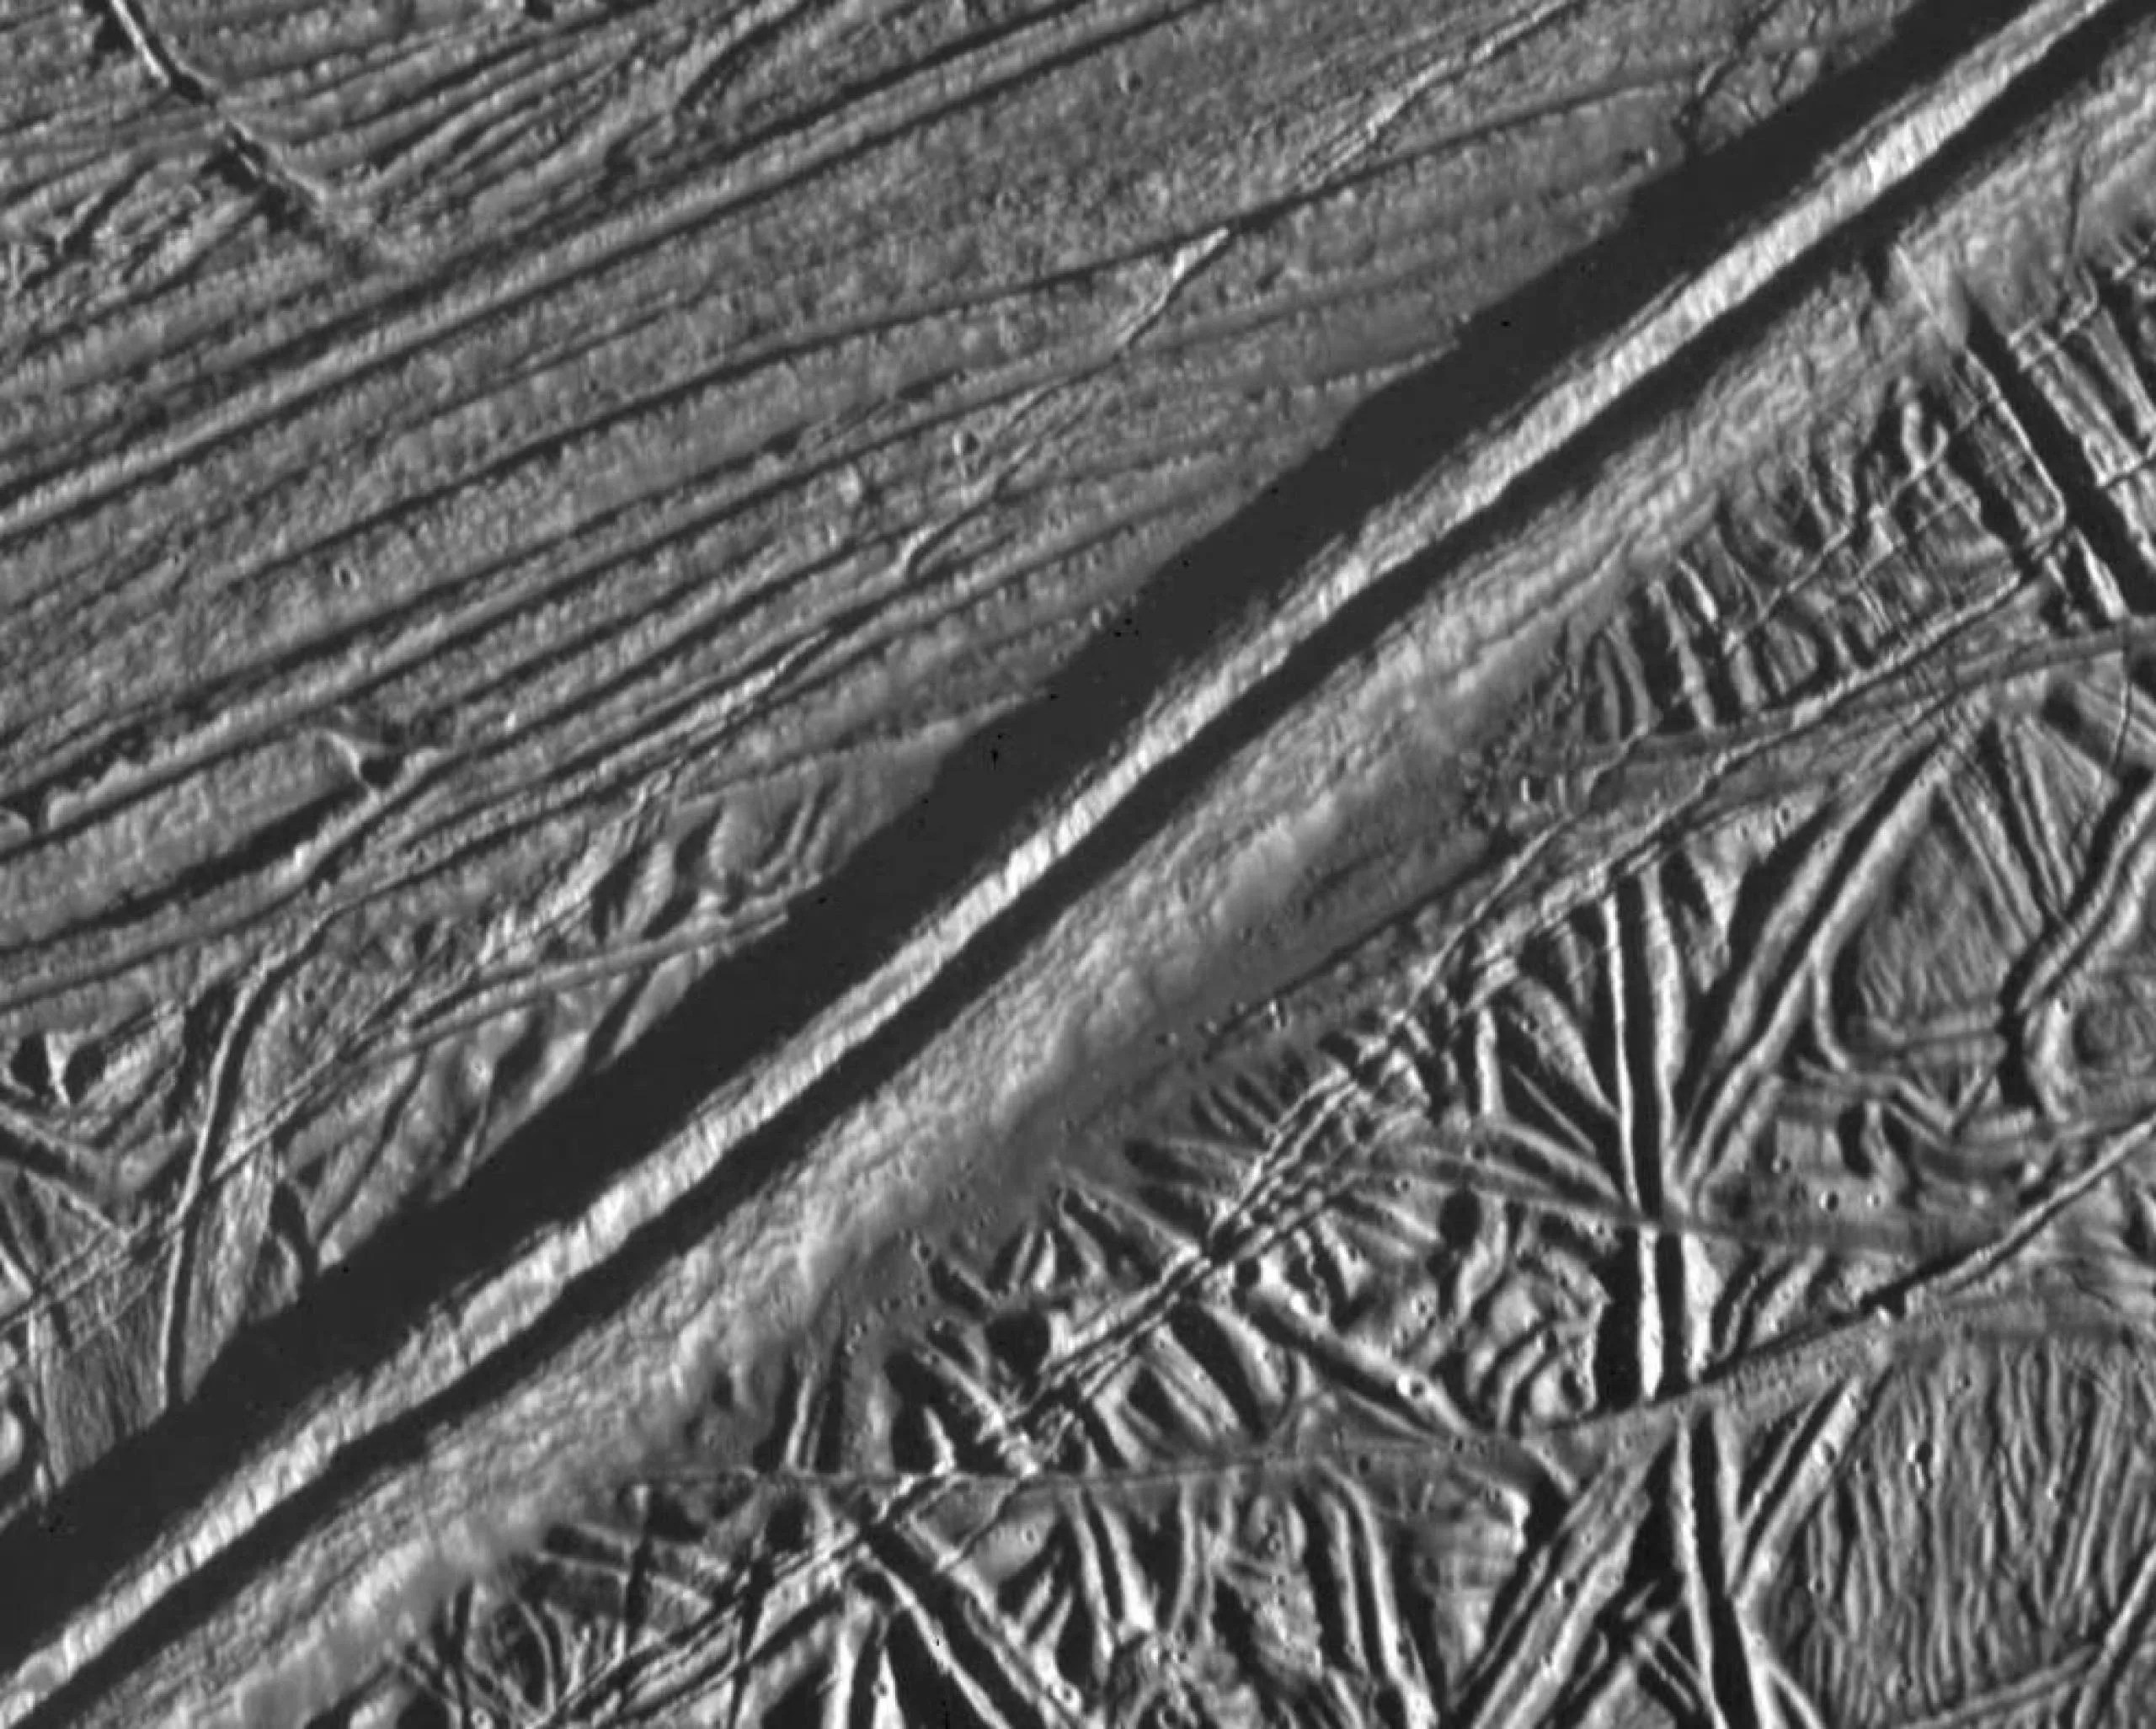 Una doble cresta que atraviesa la superficie de Europa se observa en este mosaico de dos imágenes tomadas por la sonda Galileo de la NASA durante el sobrevuelo cercano de la nave espacial el 20 de febrero de 1997. El análisis de una característica similar en Groenlandia sugiere que el agua líquida poco profunda puede ser omnipresente en la capa de hielo de la luna joviana. Créditos: NASA/JPL/ASU